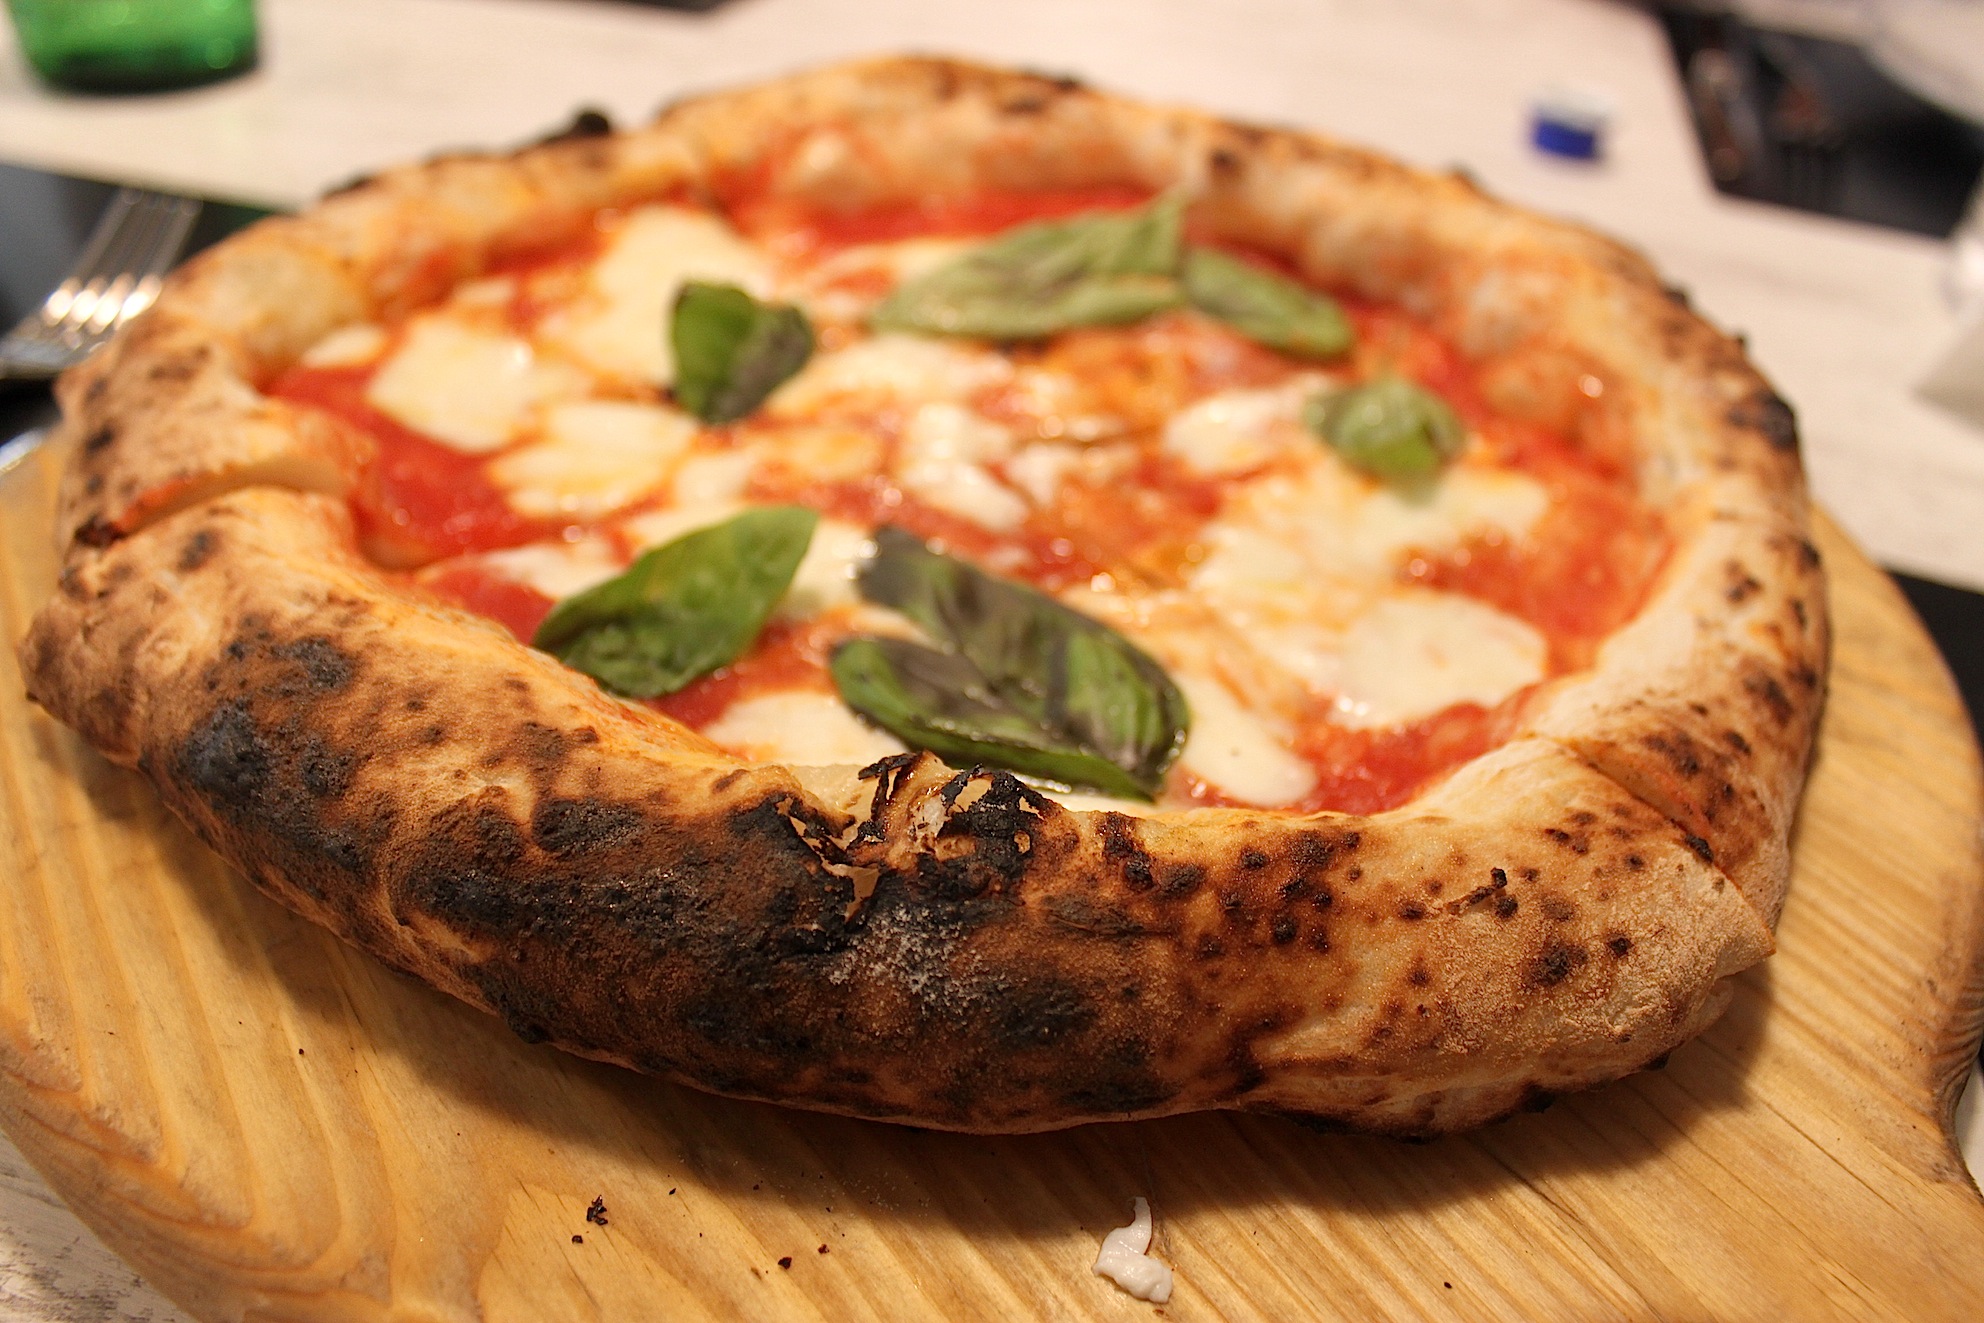 miglior-pizzeria-2021-italia-dove-classifica-completa